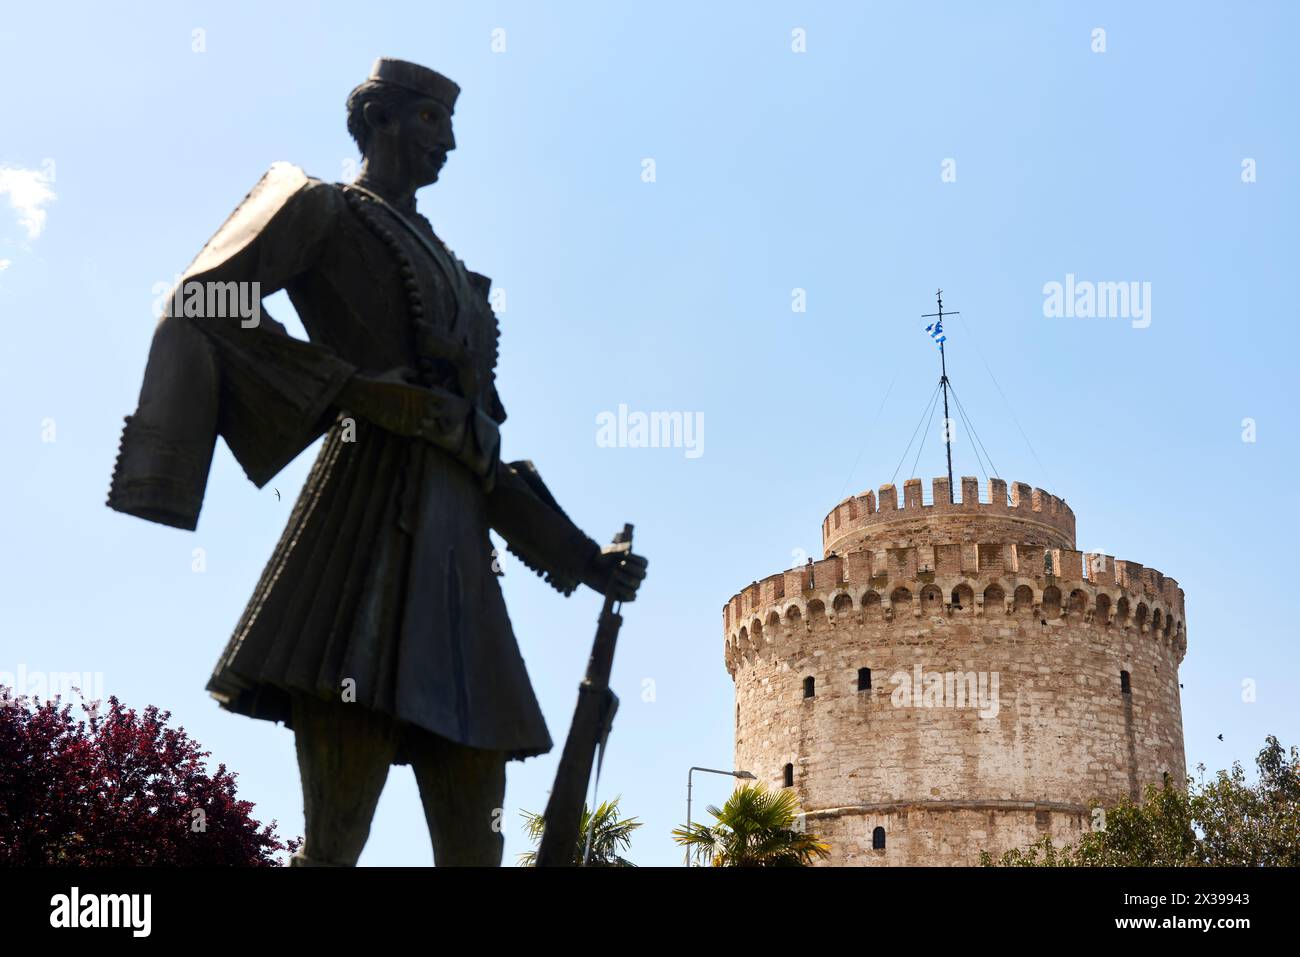 Salonicco, regione greca della Macedonia, nella Grecia settentrionale, il Monumento di Pavlos Melas e la Torre Bianca Foto Stock